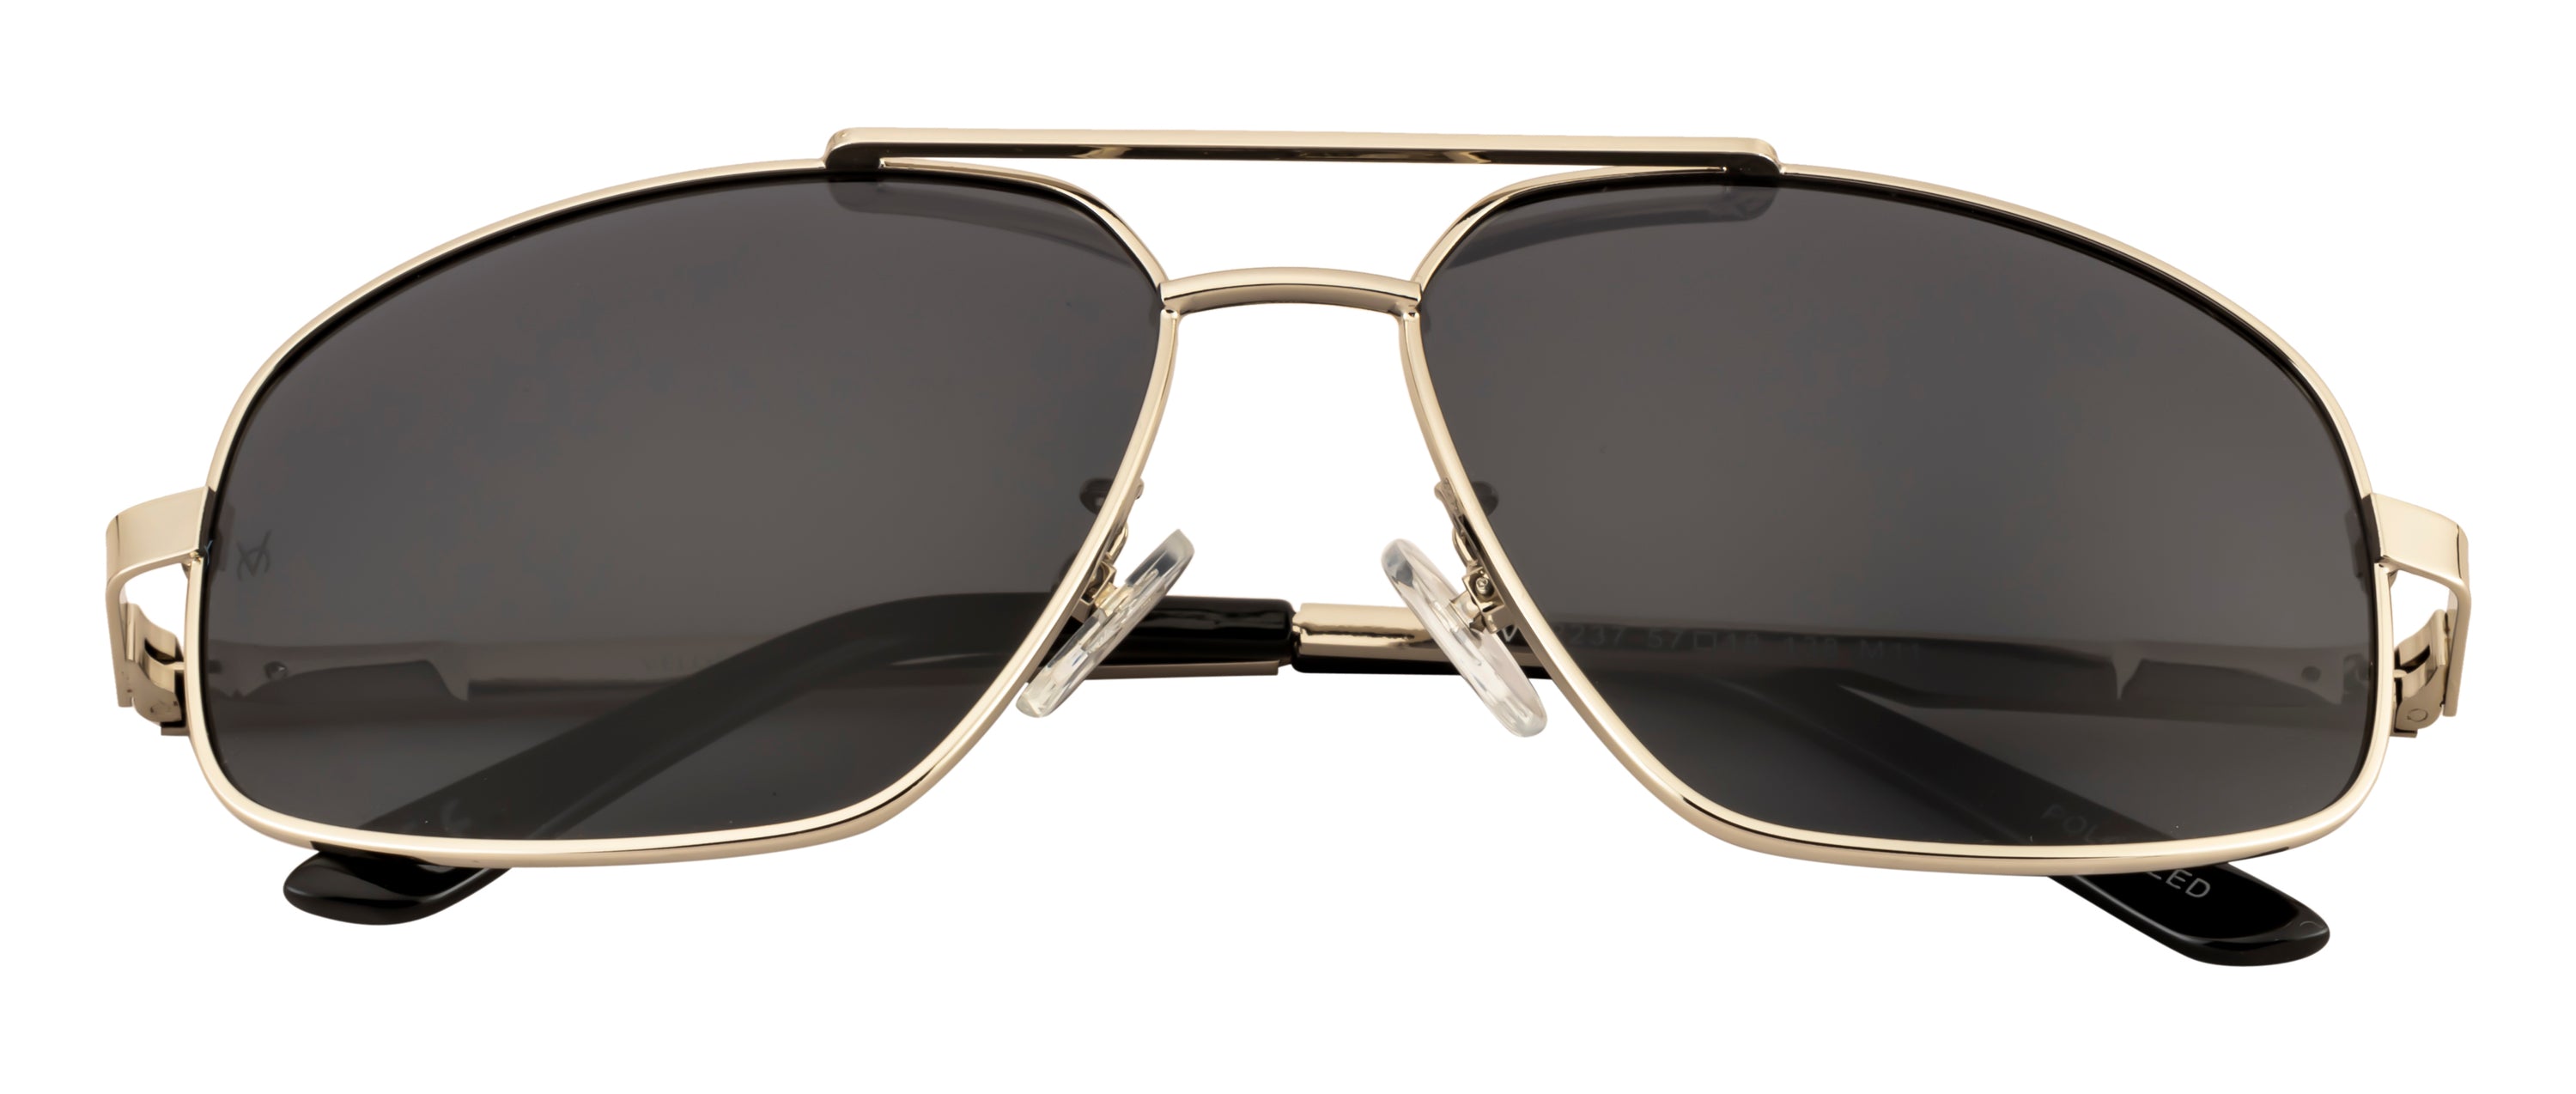 Velocity Rectangular Polarized POL Sunglasses for Men